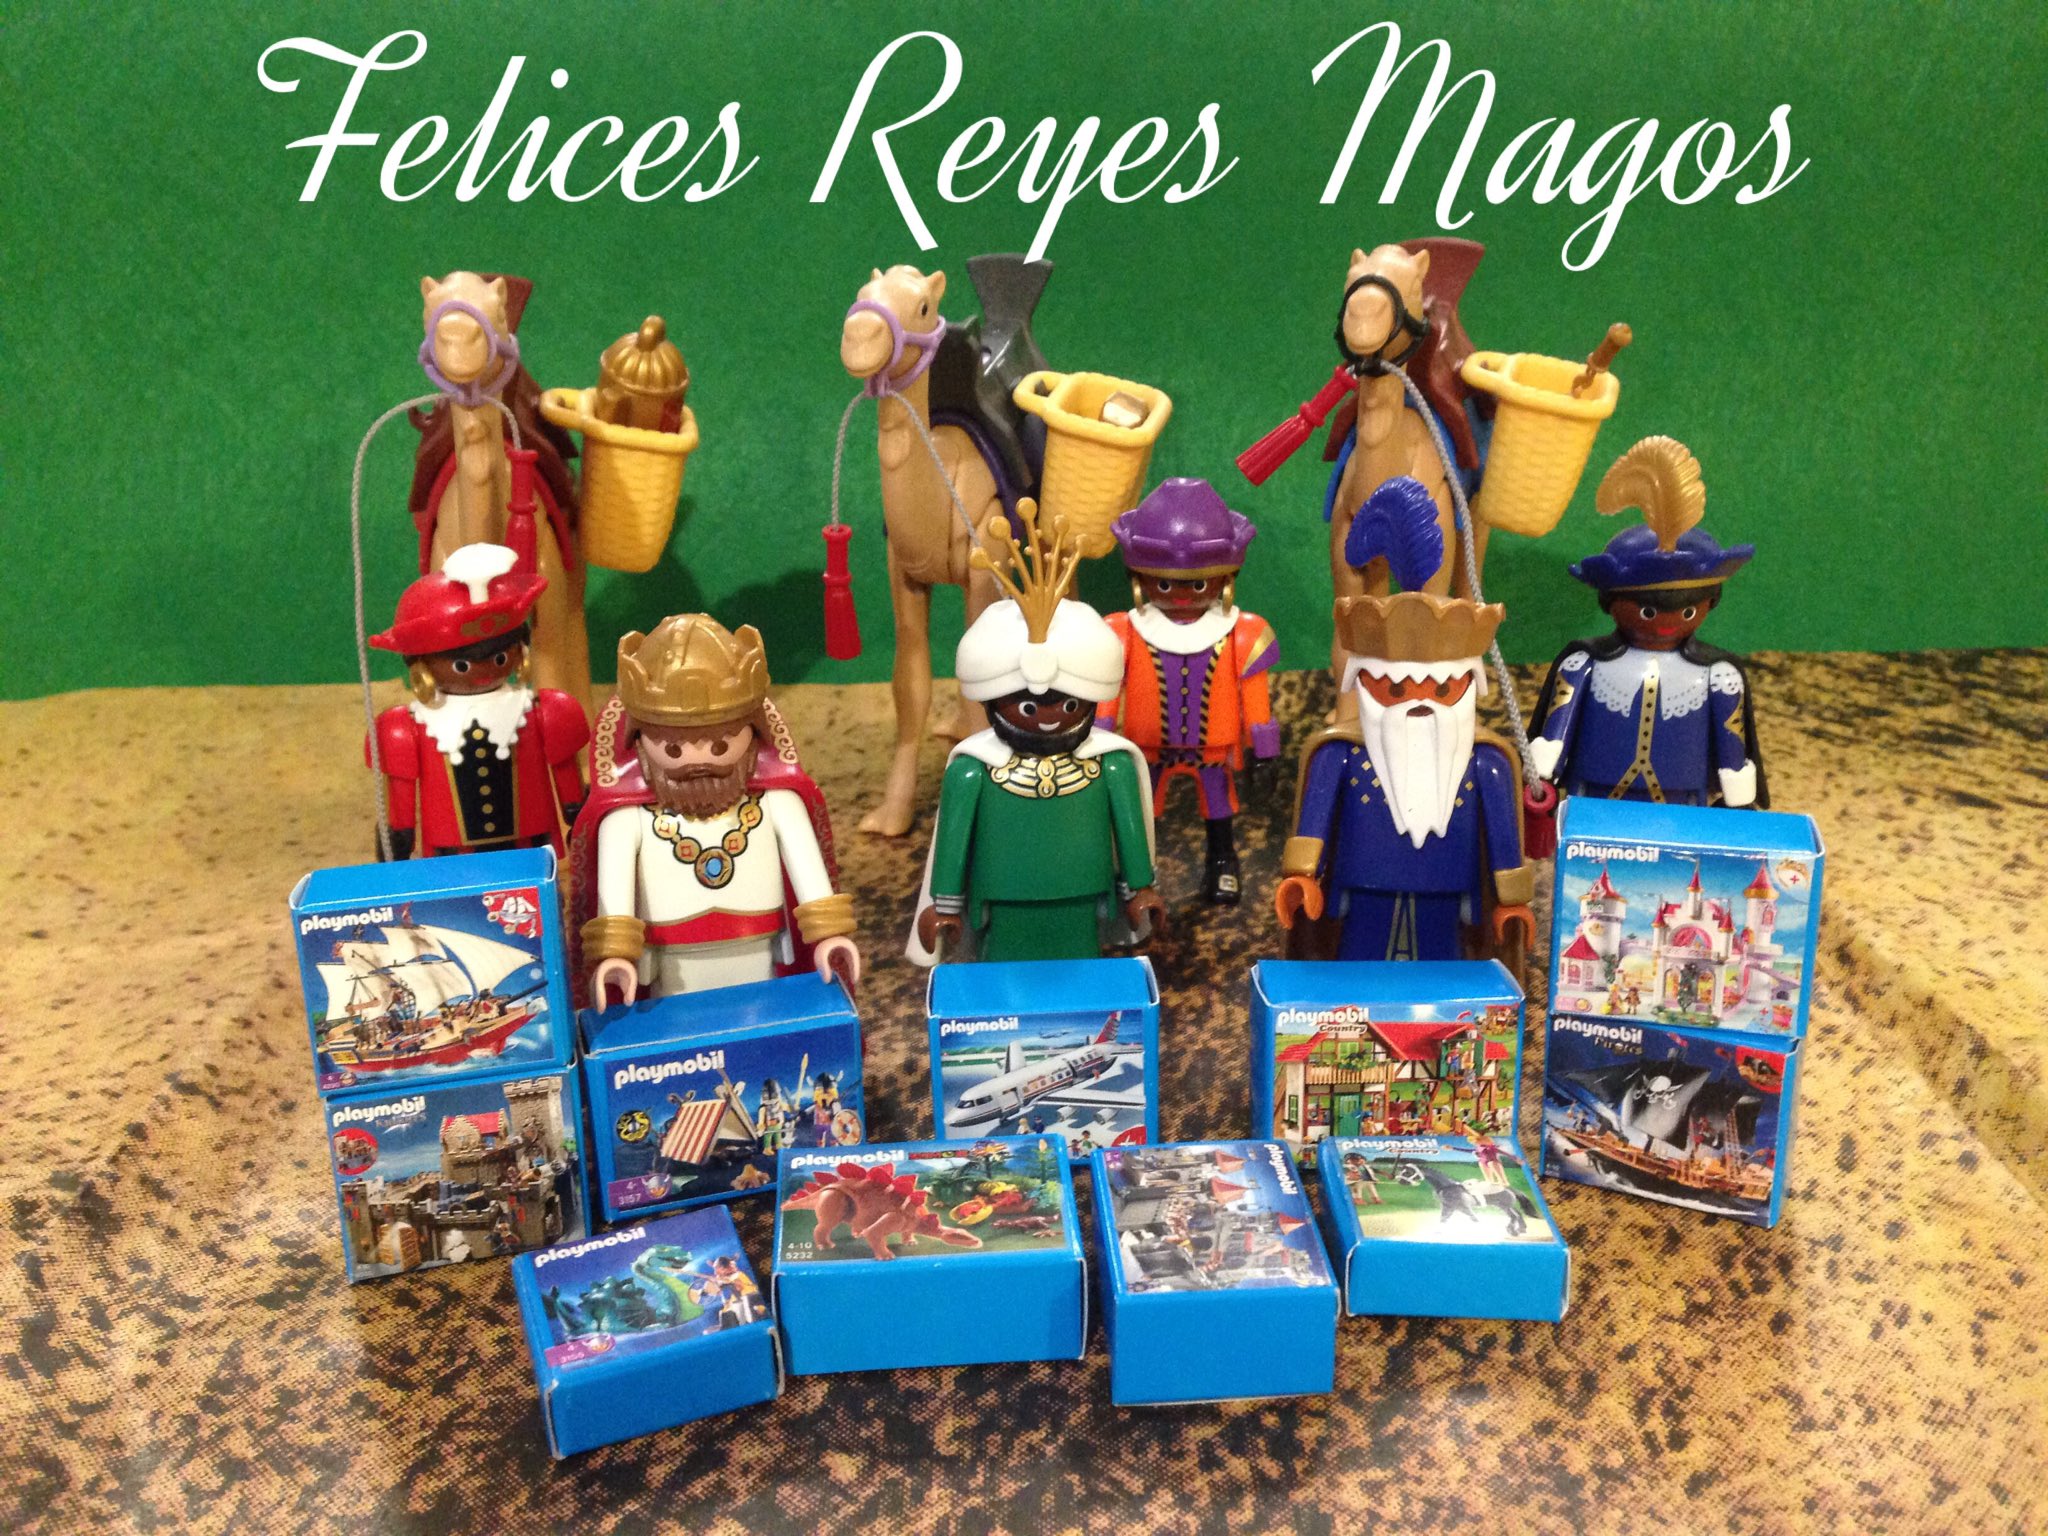 jose A. on Twitter: "Que sus majestades los Reyes de Oriente les dejen muchos regalos #playmobil #geobra #regalos #juguetes #clicks #diversión #toys https://t.co/7CrlS5TcPa" /